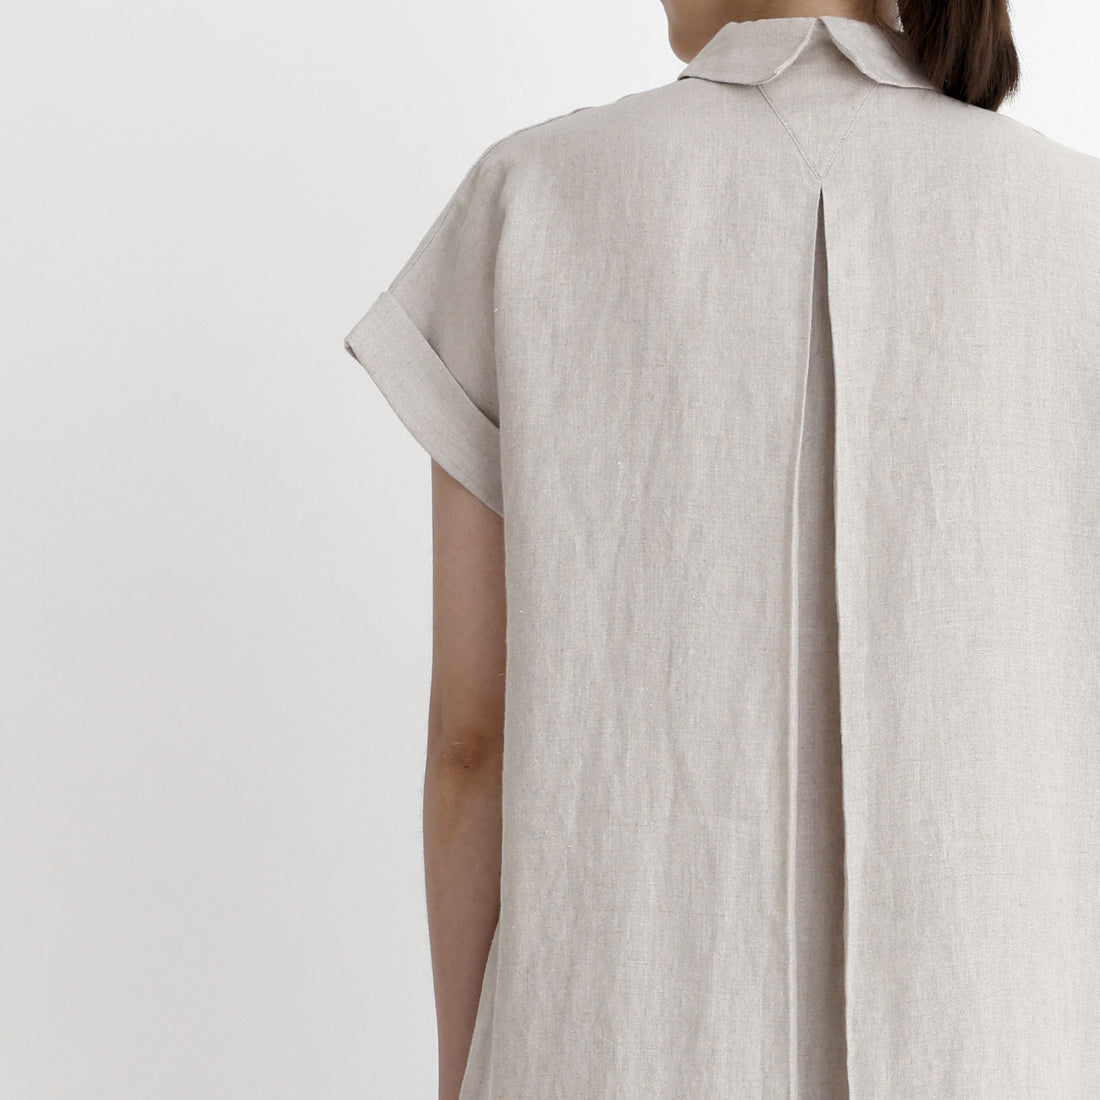 Linen Maxi Shirtdress - SS23 - Oatmeal